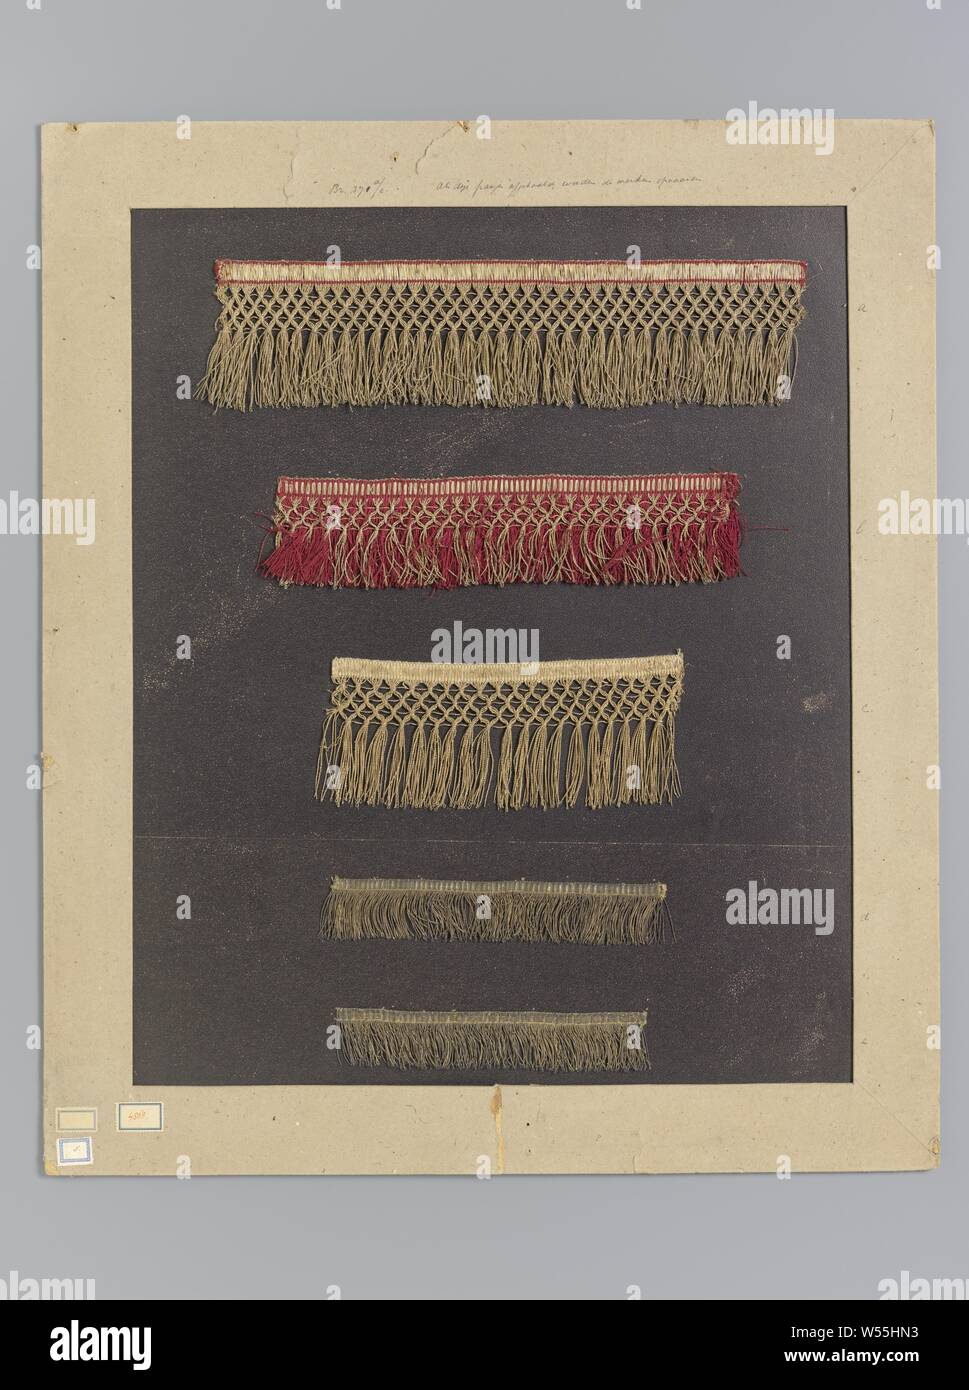 Fünf Gold - farbige Garnituren mit Fransen auf Karton, Pappe, an dem fünf Garnituren gesichert sind, aus gold-farbig Gewinde mit Fransen. Roter Seide ist auch in den oberen zwei Barren verwendet. Die Buchstaben a bis e auf die Pappe Neben dem Streifen geschrieben sind., anonym, Unbekannt, C. 1700 - C. 1899, Seide, Metall, l 39 cm x W 10 cm l 31 cm × w7cm L 23 cm x W 10 cm l 22 cm × w4cm L 20,5 cm × w4cm h 71,5 cm x W 61 cm Stockfoto